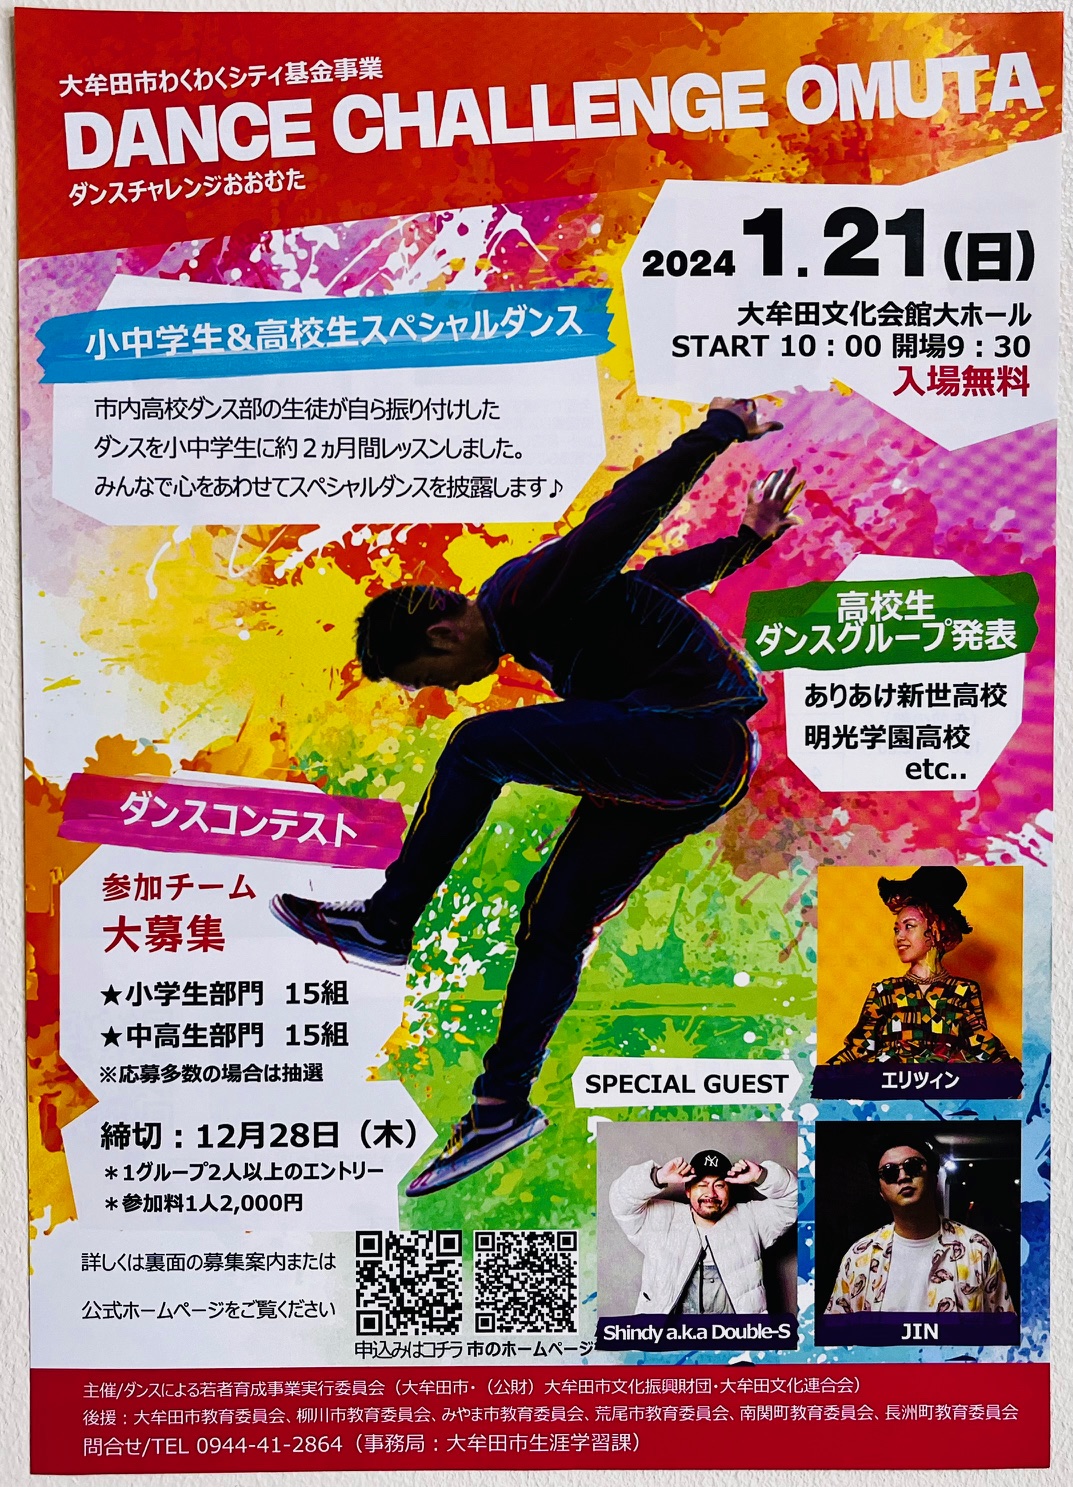 2024年1月21日に開催される「DANCE CHALLENGE OMUTA」